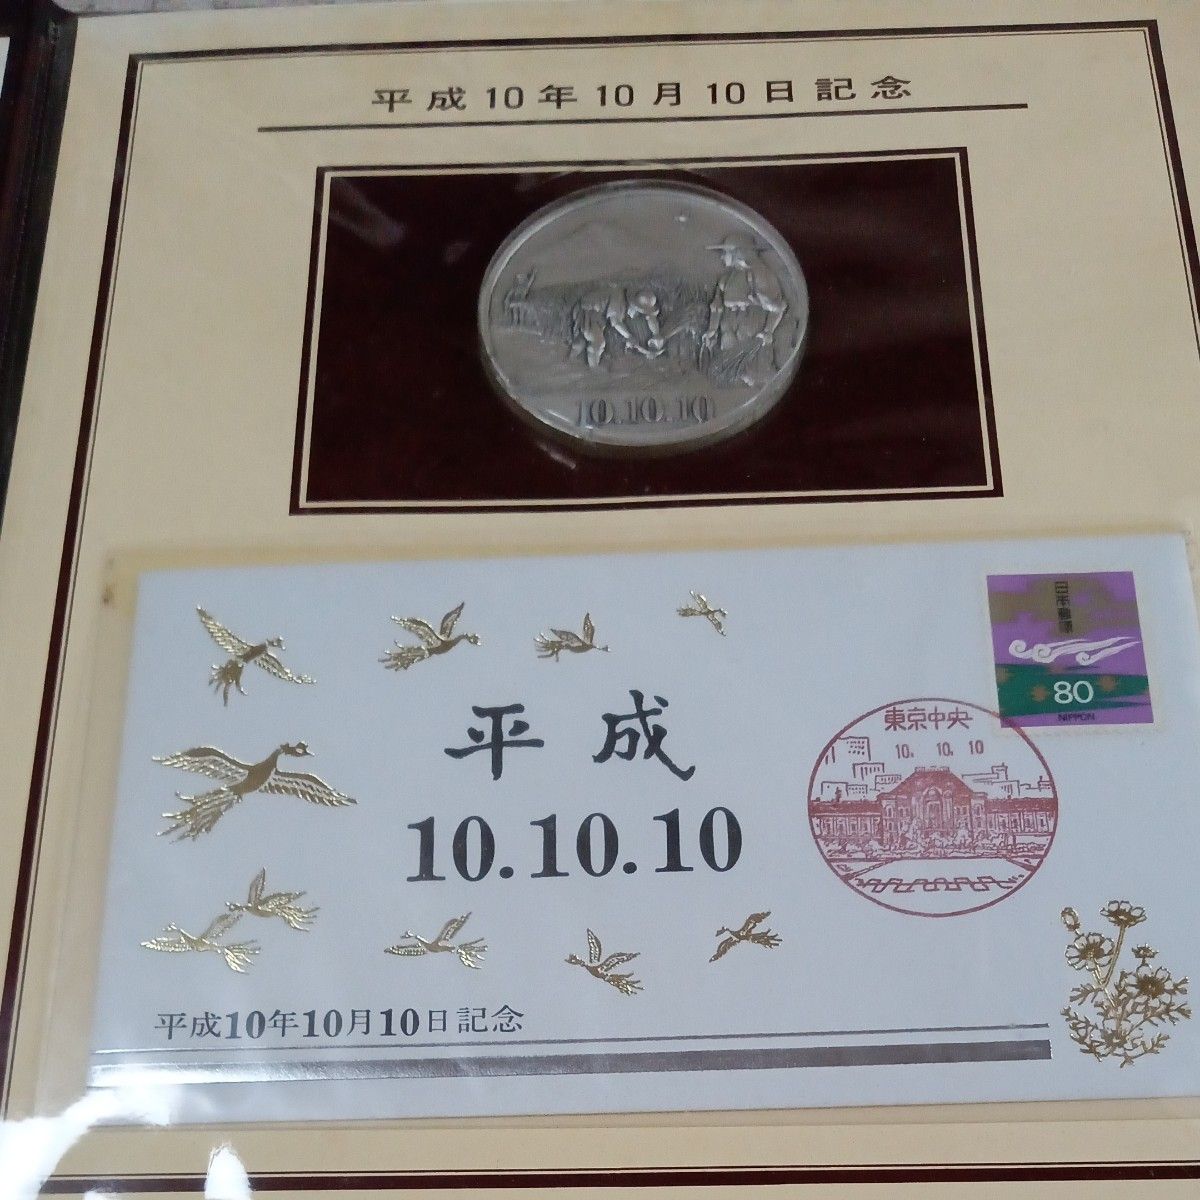 純銀　平成10年10月10日 記念メダル 記念カバー セット 極珍品　最高品位999.9%純銀90g大蔵省造幣局の極印打刻有り